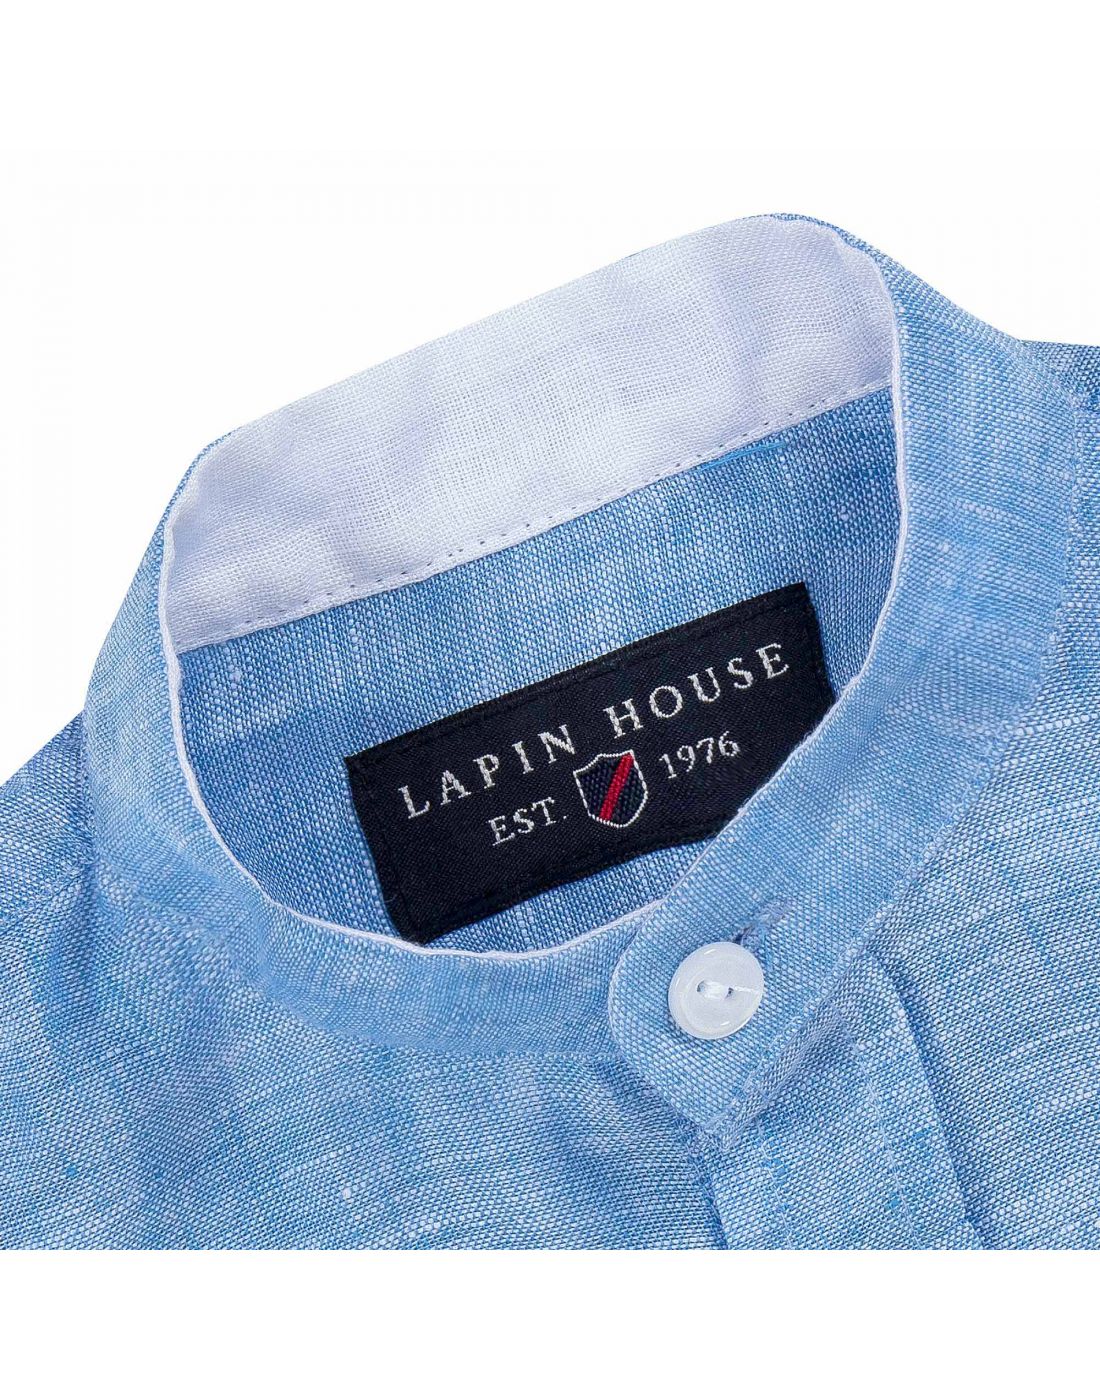 Lapin Baby Print T-Shirt & Shorts Set